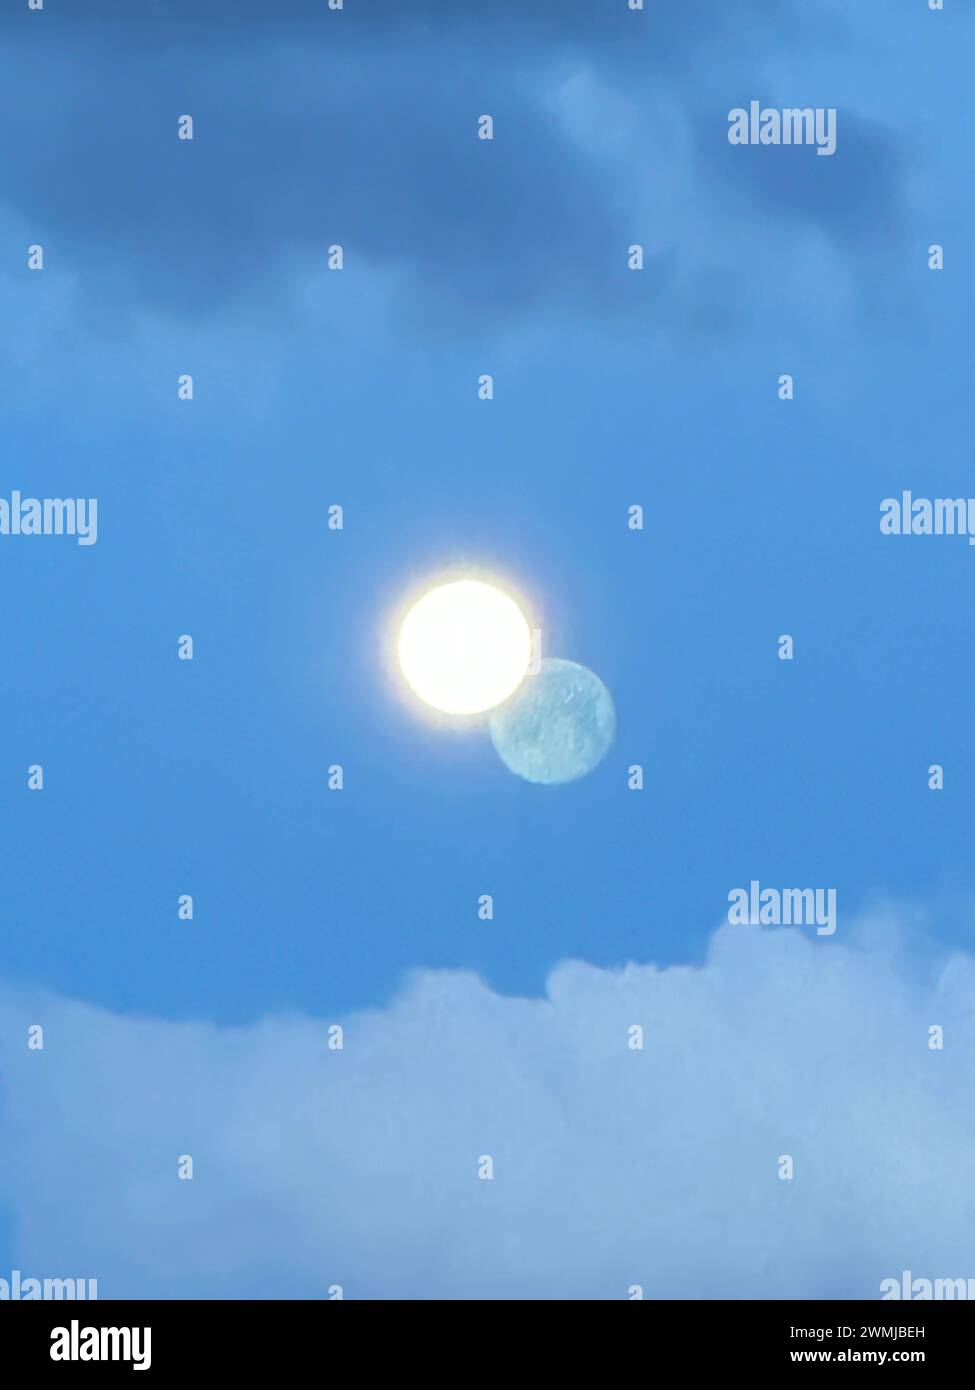 Una luna brillante que brilla contra un cielo azul con una imagen de sombra en las nubes distantes parece una luna doble con un círculo amarillo o dos planetas distantes. Foto de stock